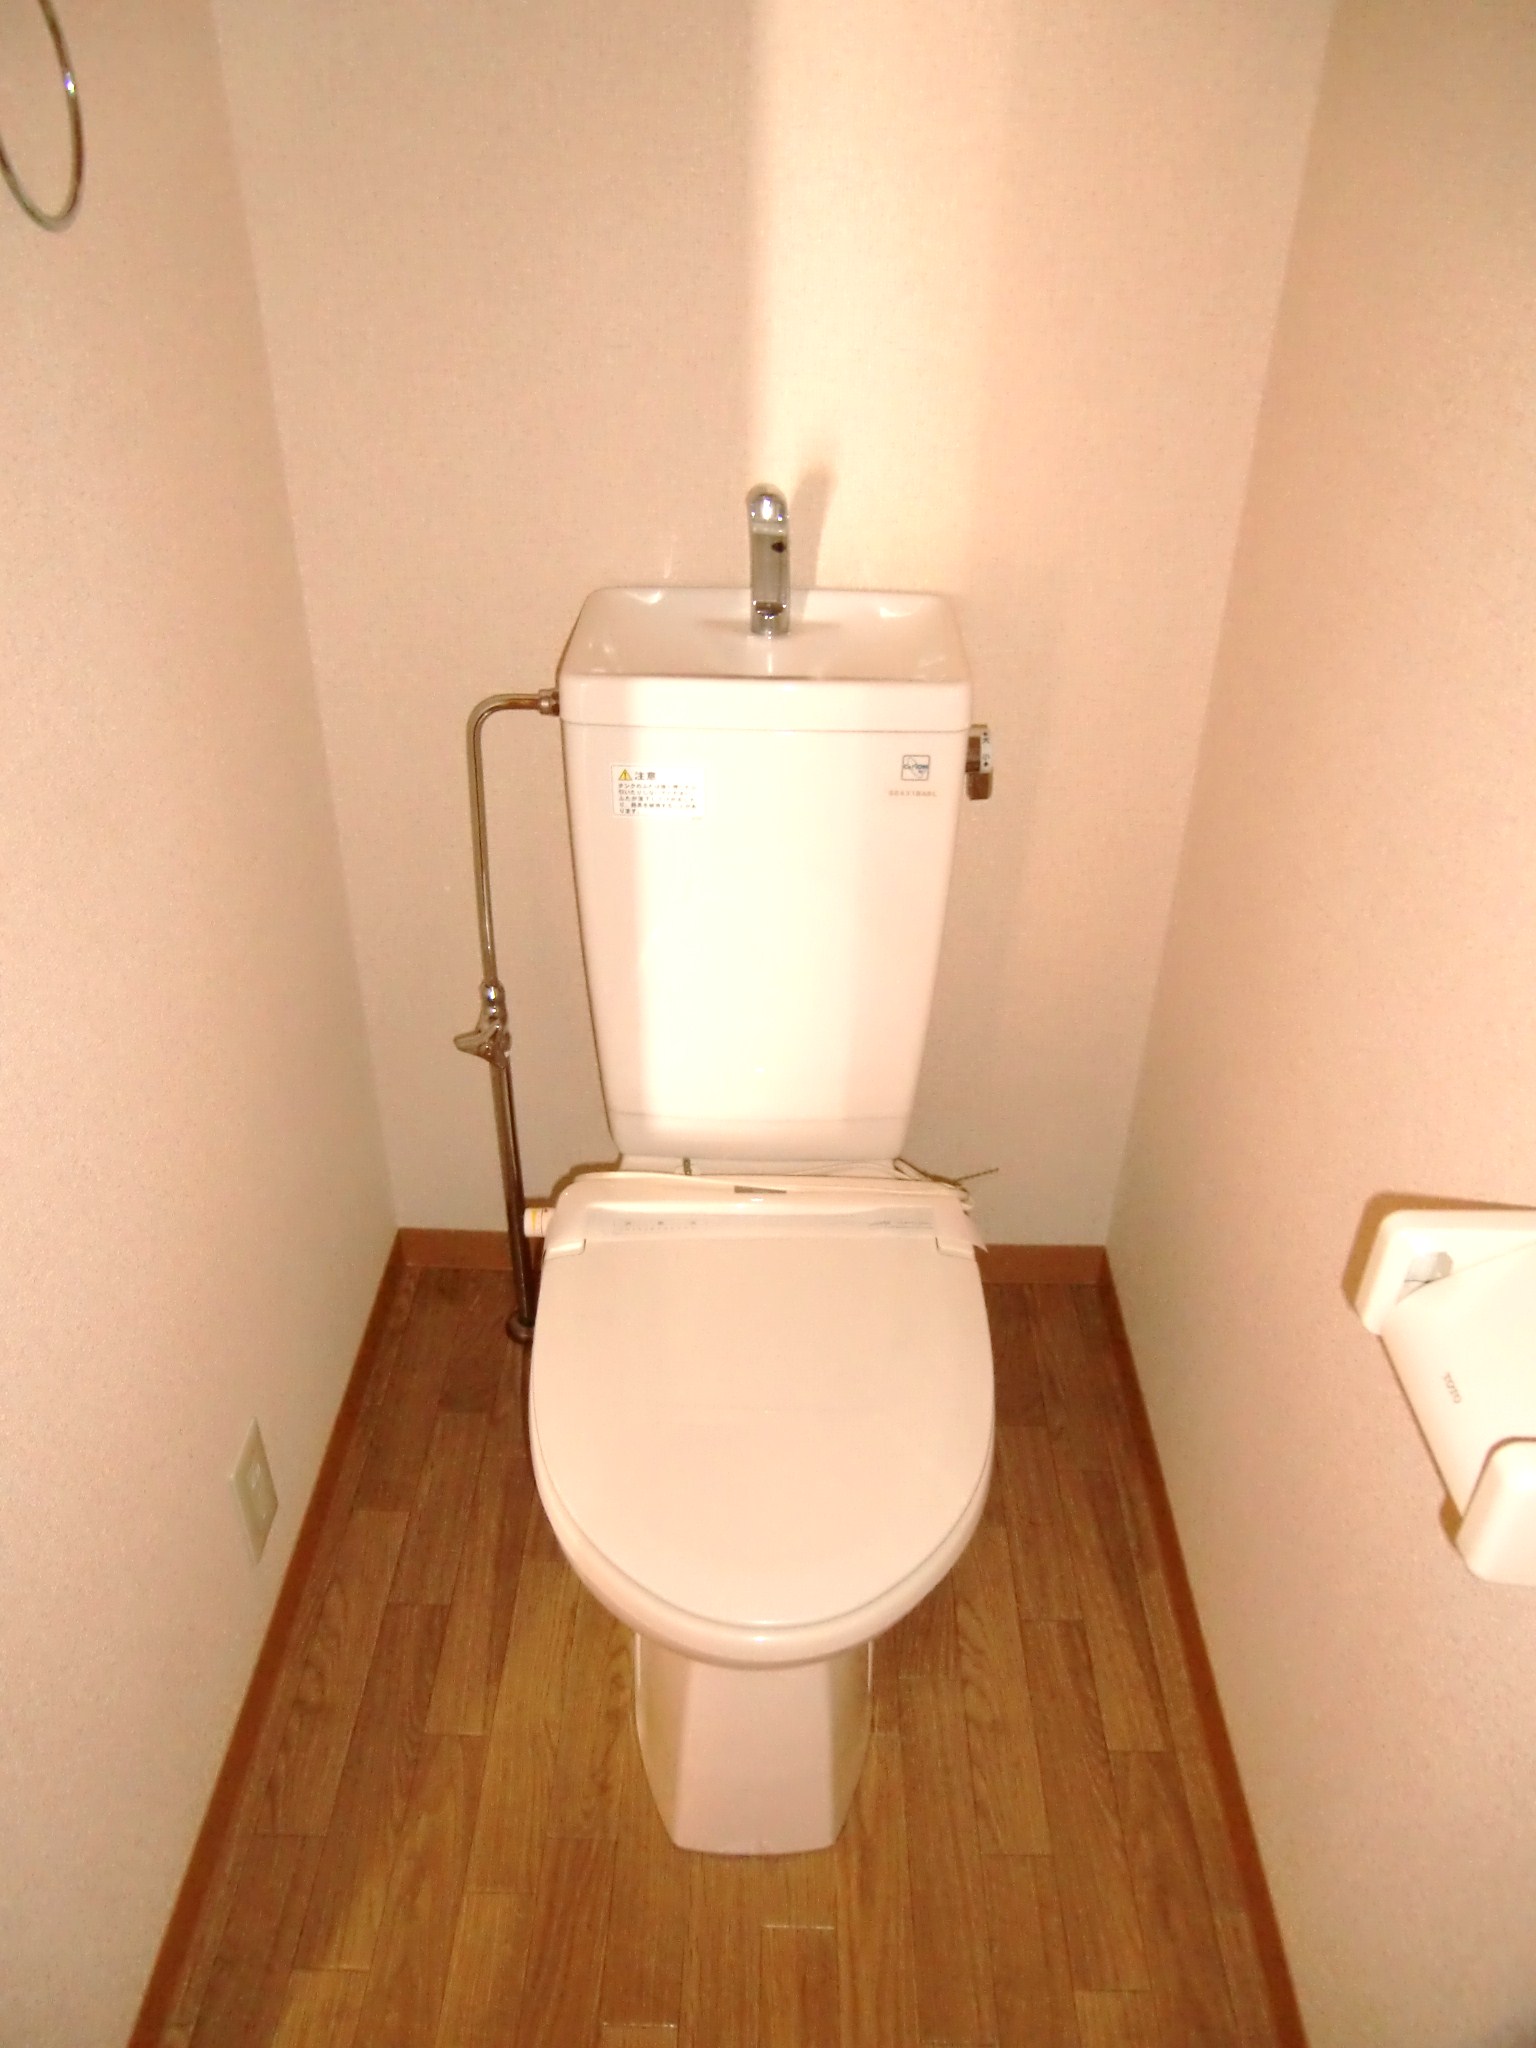 Toilet.  ☆ toilet ☆ Heating toilet seat